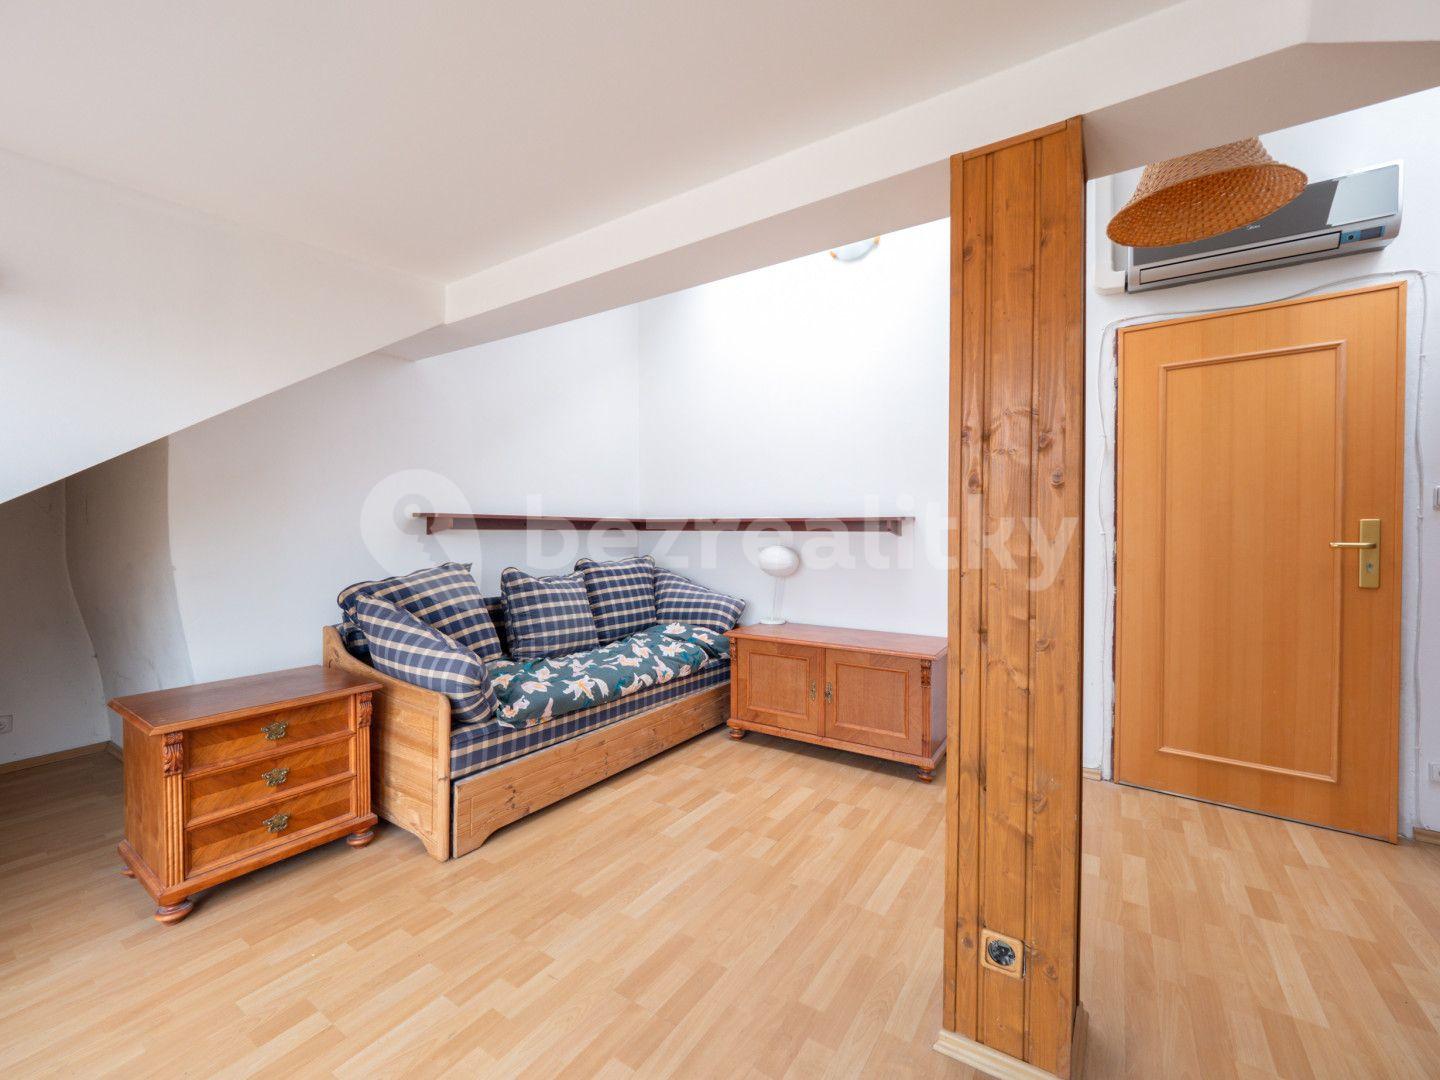 3 bedroom with open-plan kitchen flat for sale, 173 m², Janáčkovo nábřeží, Prague, Prague